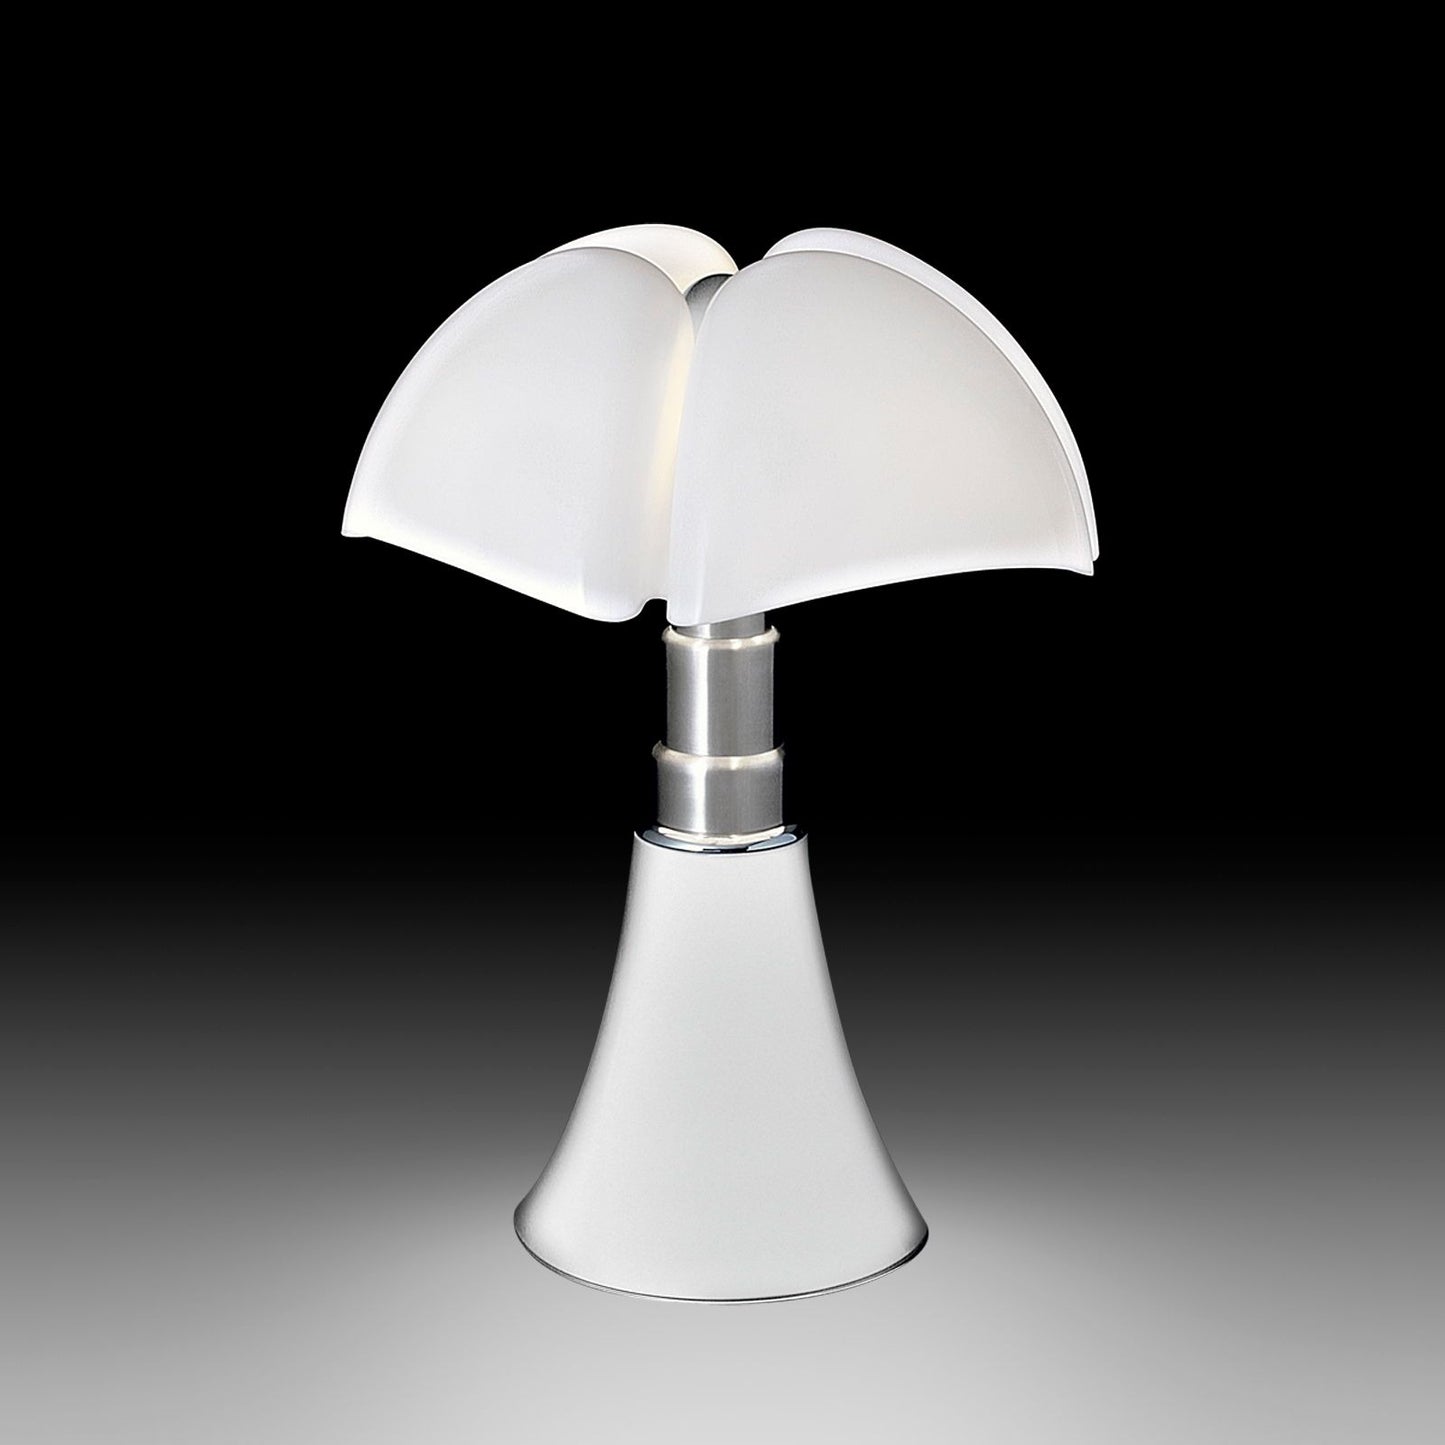 Martinelli Luce - Lampe de table Pipistrello Blanche